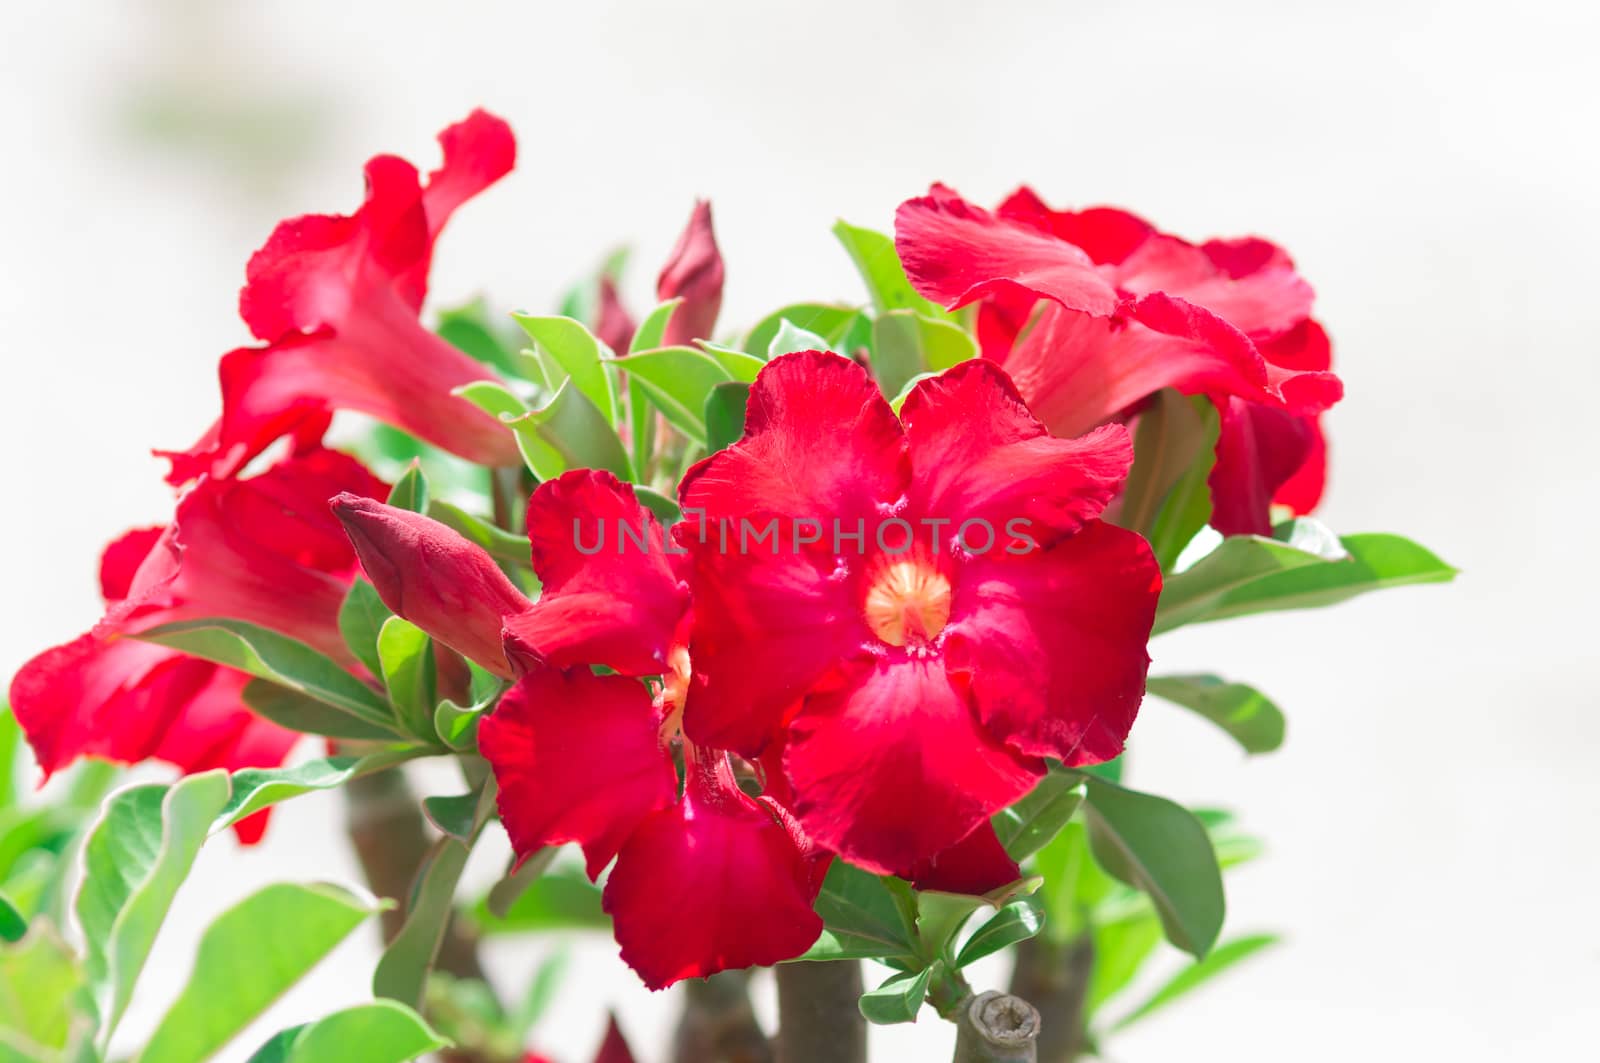 Desert Rose flowers by seksan44